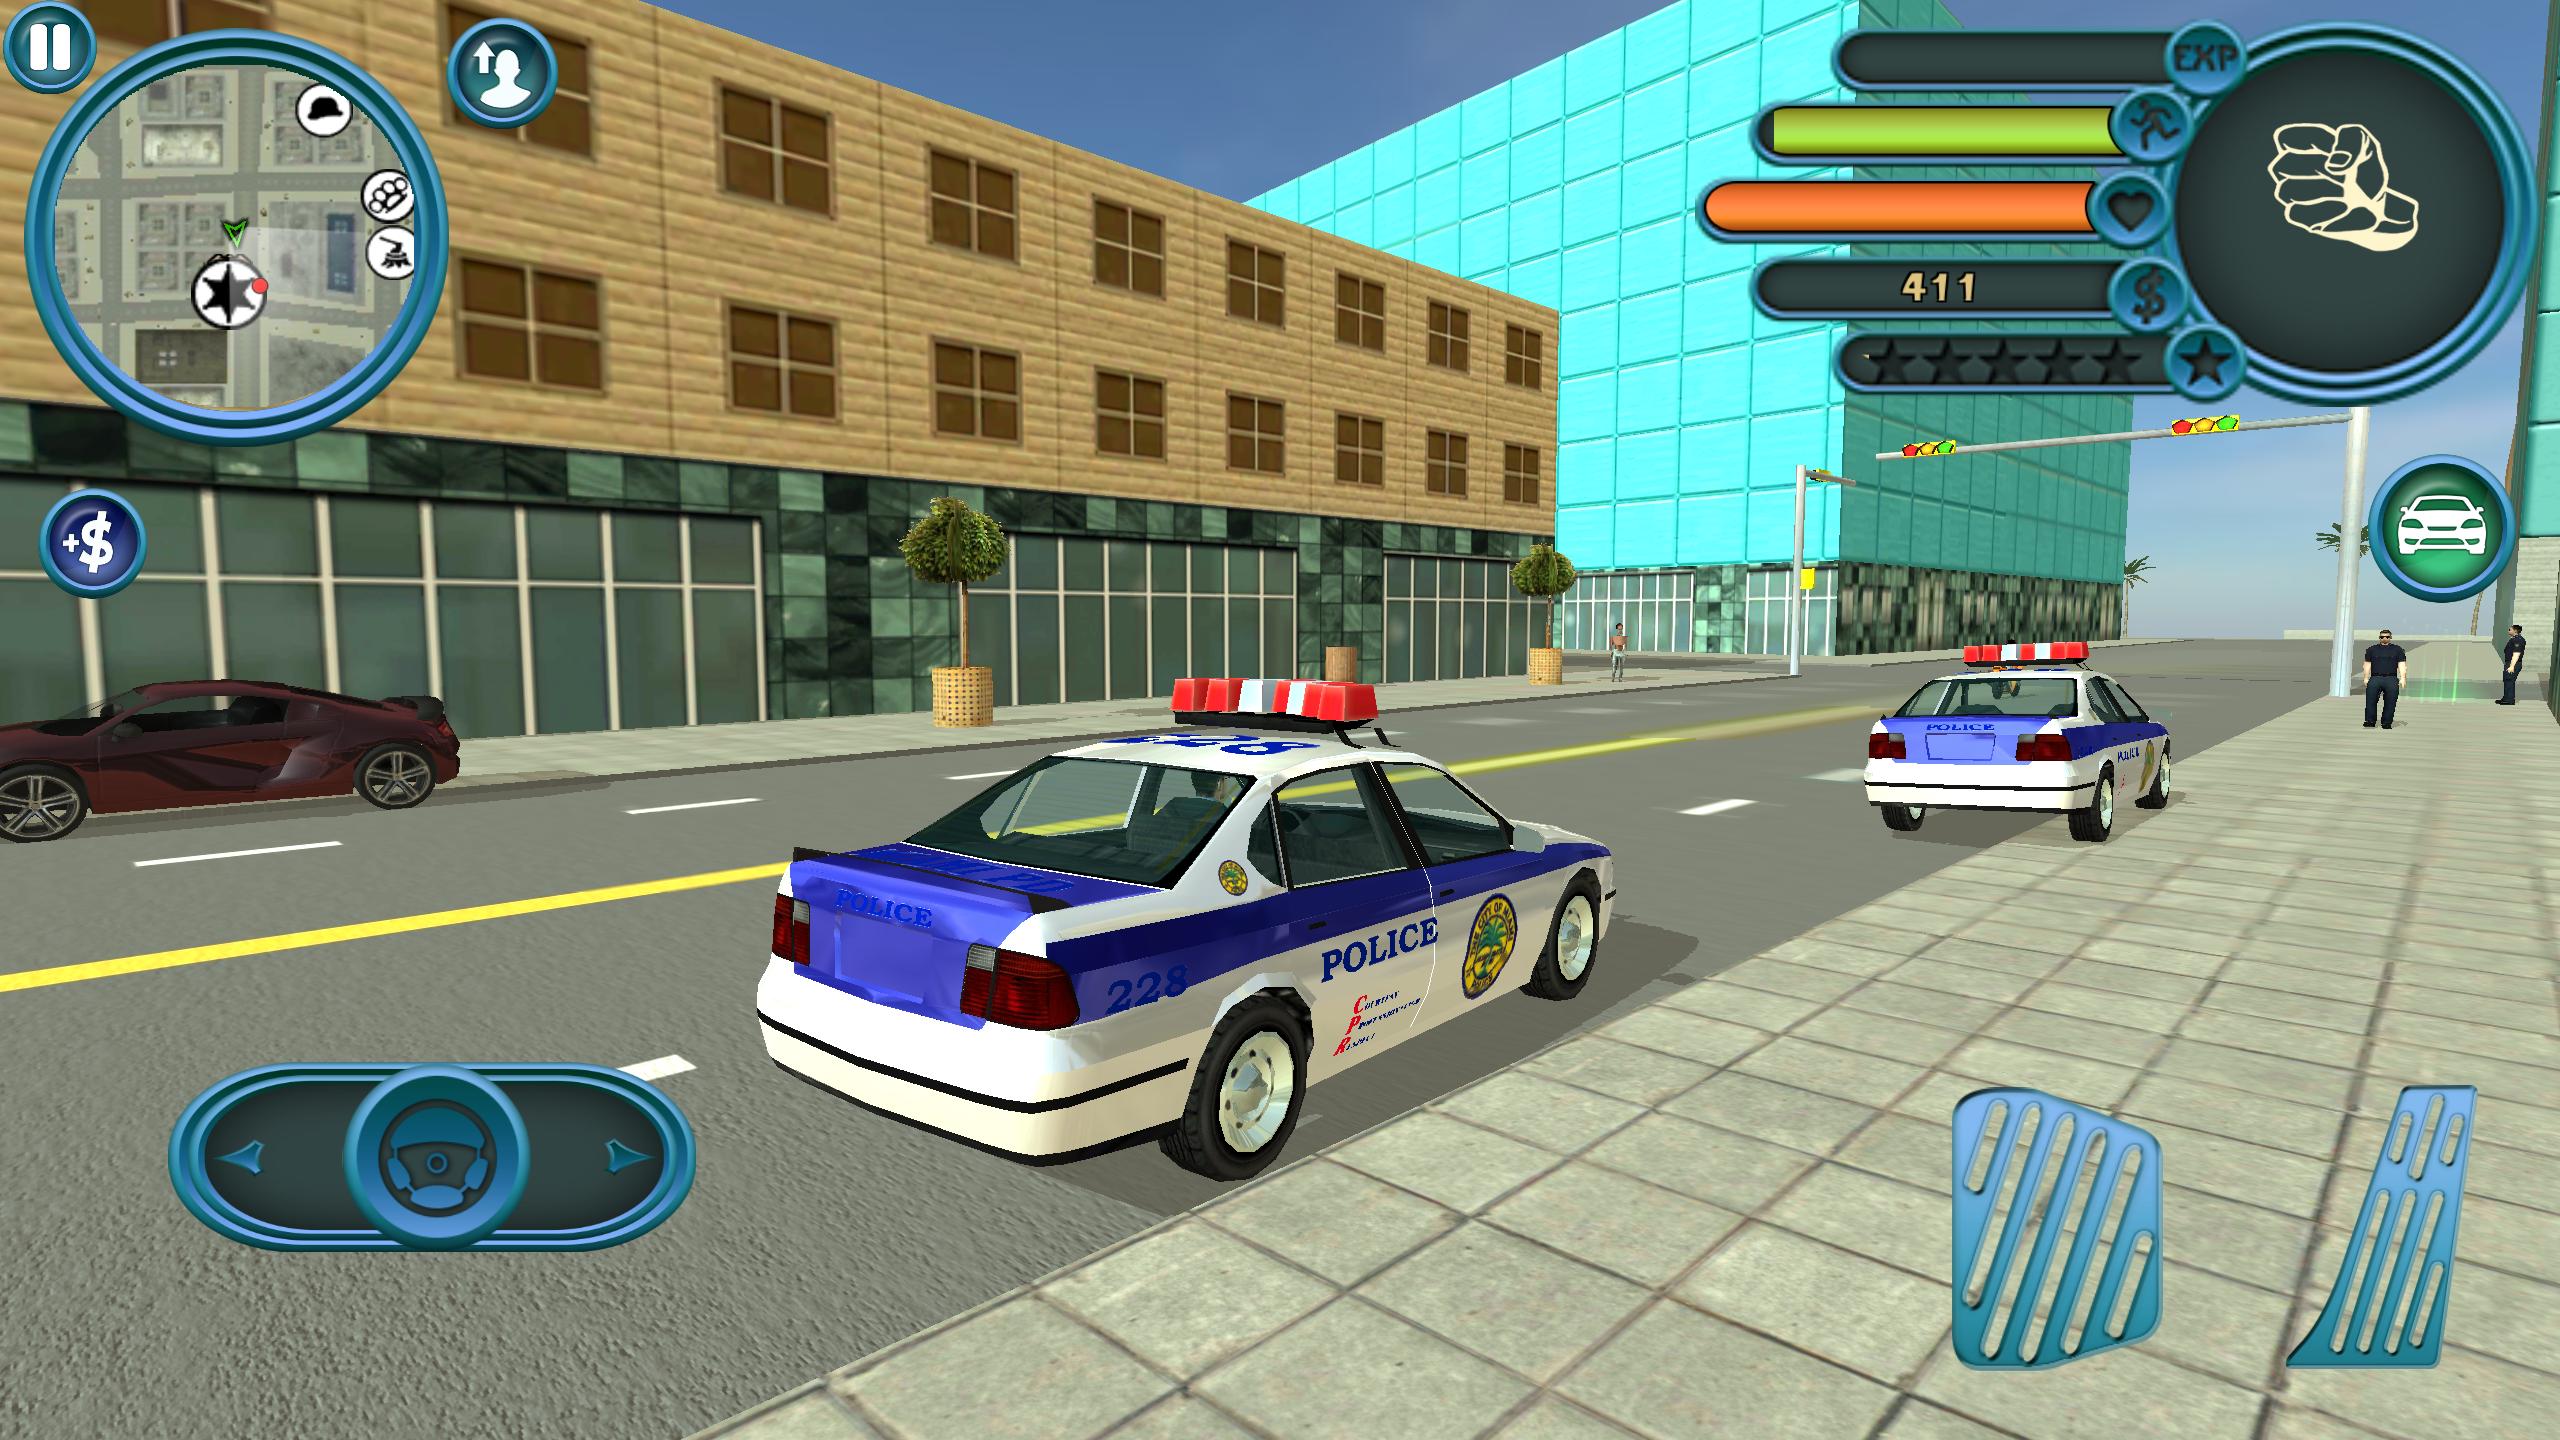 Бесплатные игры про полицейских. Miami Police игра. Игра City Police car. Полиция Майами игра на андроид. Симулятор полицейского участка.